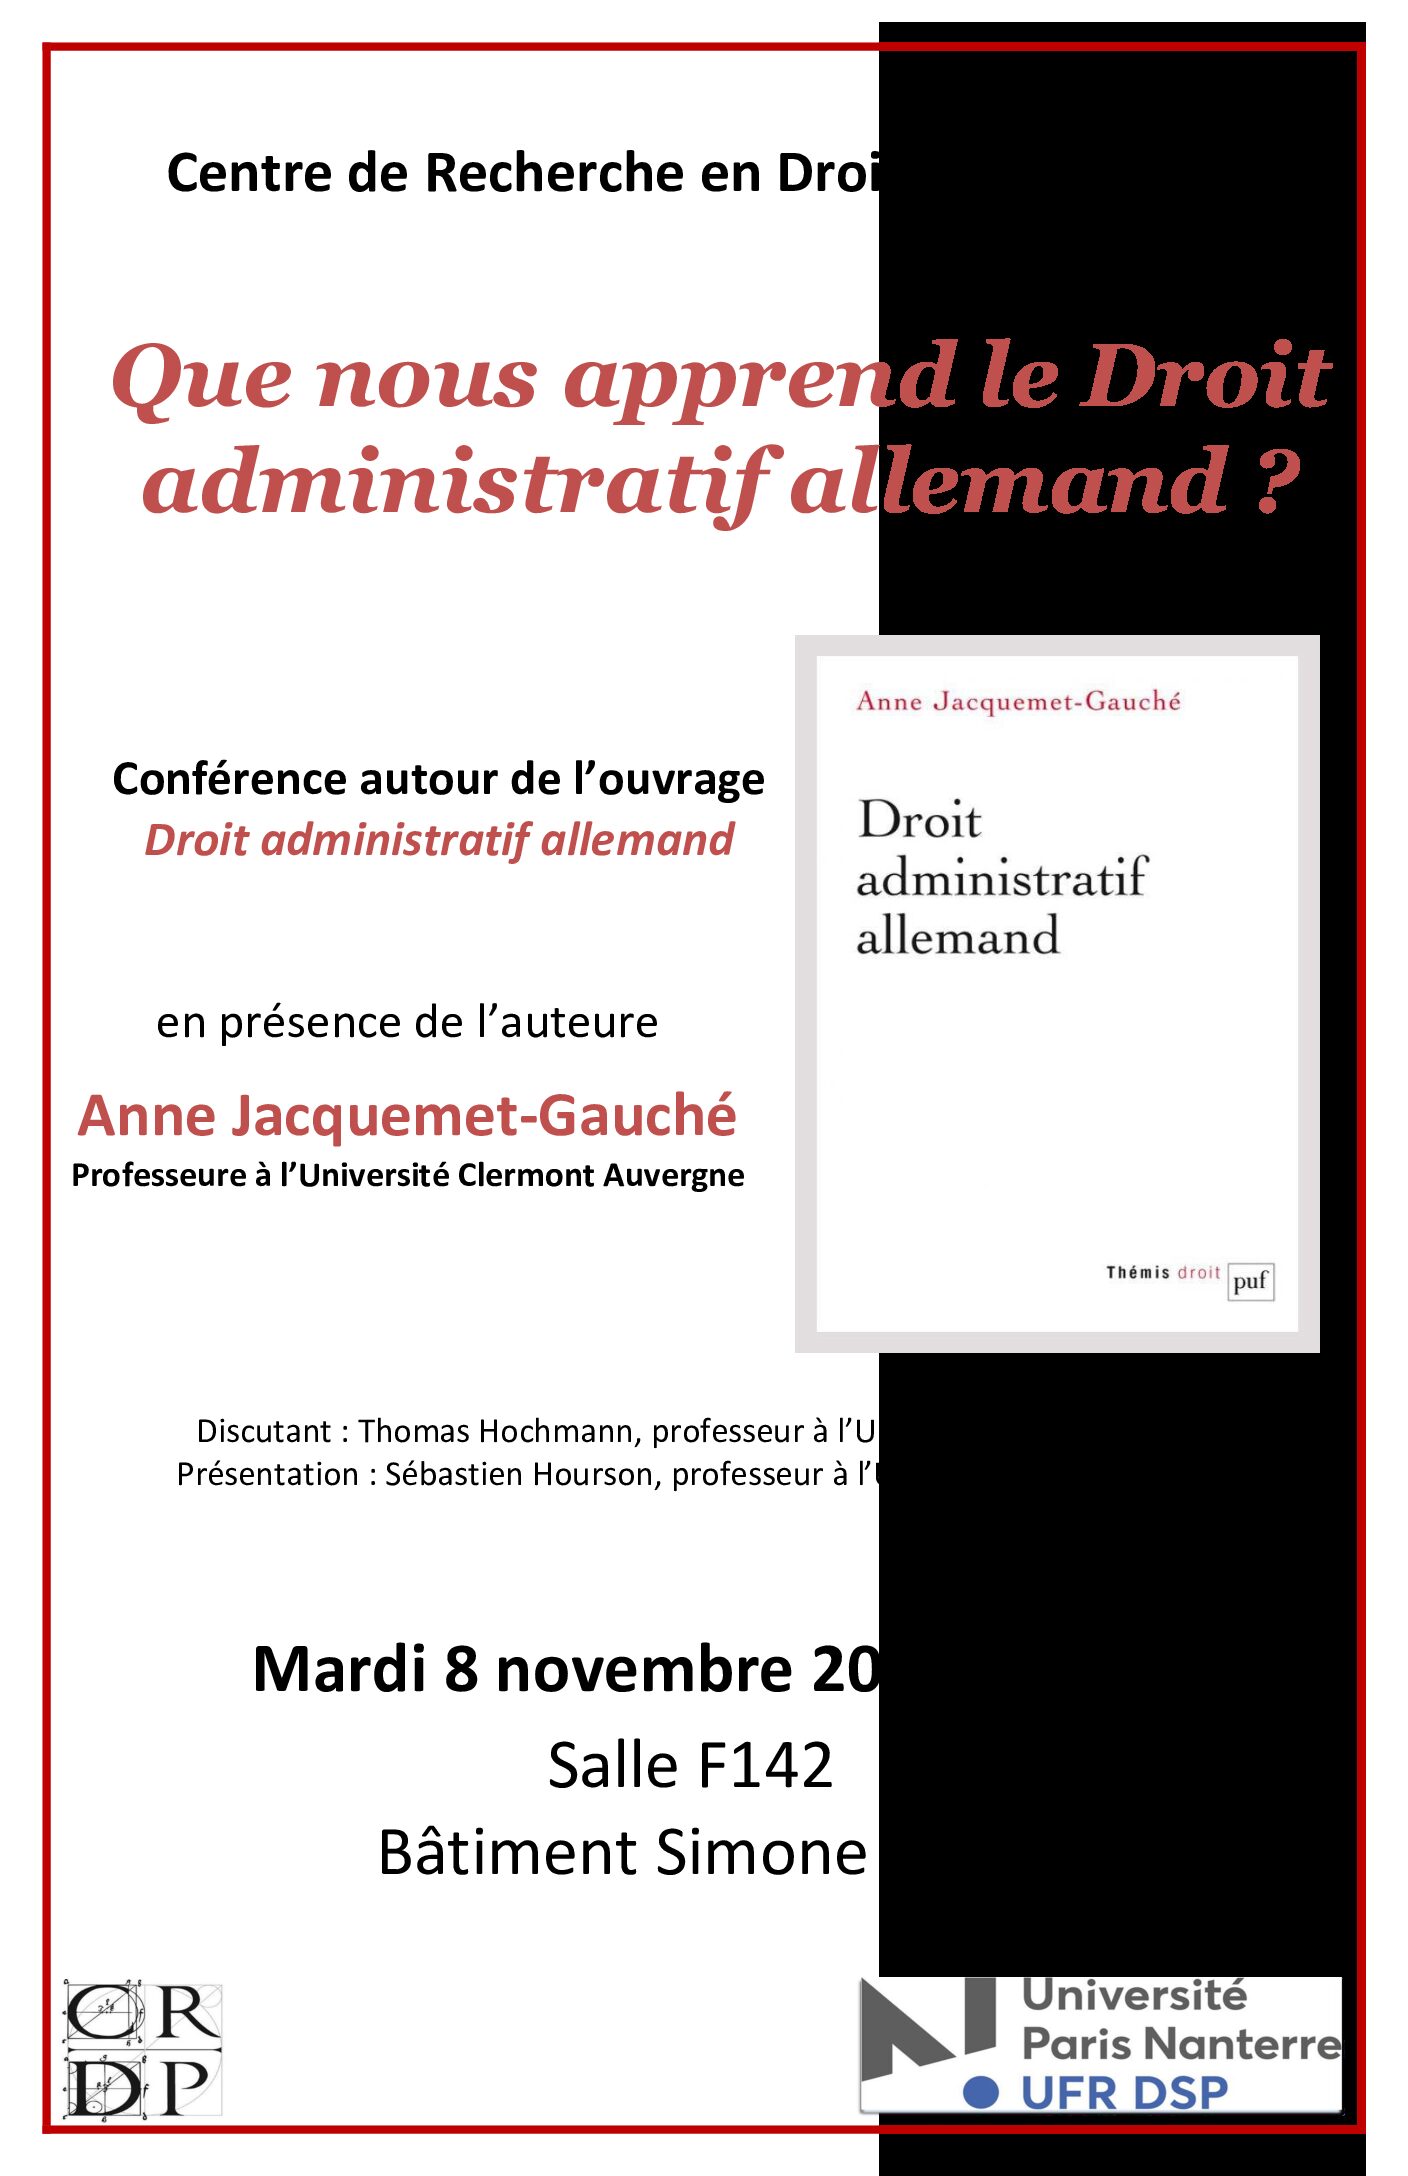 Conférence autour de l’ouvrage “Droit administratif allemand” d’Anne Jacquemet-Gauché